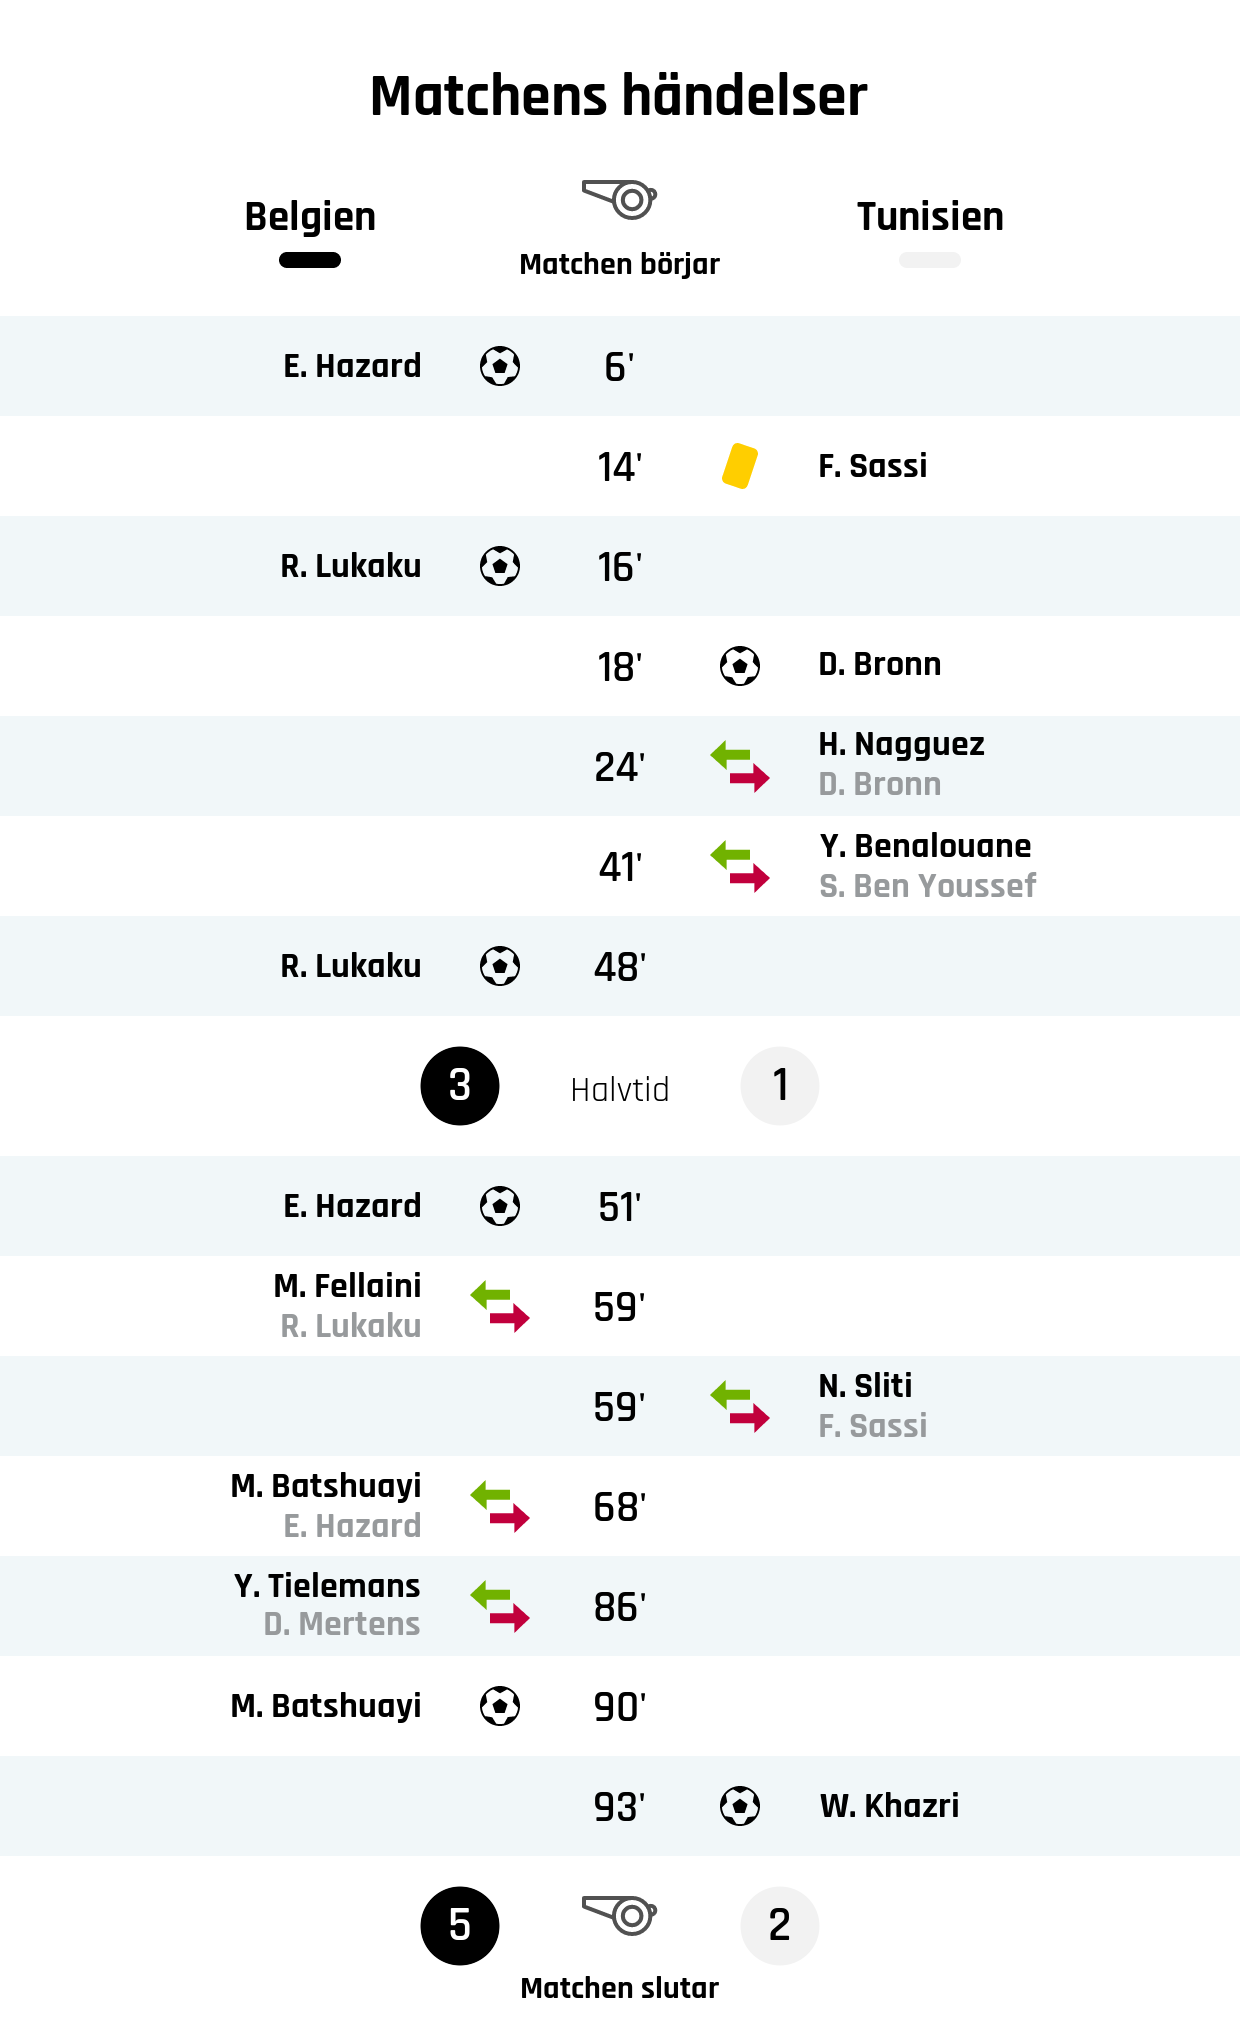 6' Mål Belgien: E. Hazard
14' Gult kort: F. Sassi, Tunisien
16' Mål Belgien: R. Lukaku
18' Mål Tunisien: D. Bronn
24' Tunisiens byte: H. Nagguez in, D. Bronn ut
41' Tunisiens byte: Y. Benalouane in, S. Ben Youssef ut
48' Mål Belgien: R. Lukaku
Resultat i halvtid: Belgien 3, Tunisien 1
51' Mål Belgien: E. Hazard
59' Belgiens byte: M. Fellaini in, R. Lukaku ut
59' Tunisiens byte: N. Sliti in, F. Sassi ut
68' Belgiens byte: M. Batshuayi in, E. Hazard ut
86' Belgiens byte: Y. Tielemans in, D. Mertens ut
90' Mål Belgien: M. Batshuayi
93' Mål Tunisien: W. Khazri
Slutresultat: Belgien 5, Tunisien 2